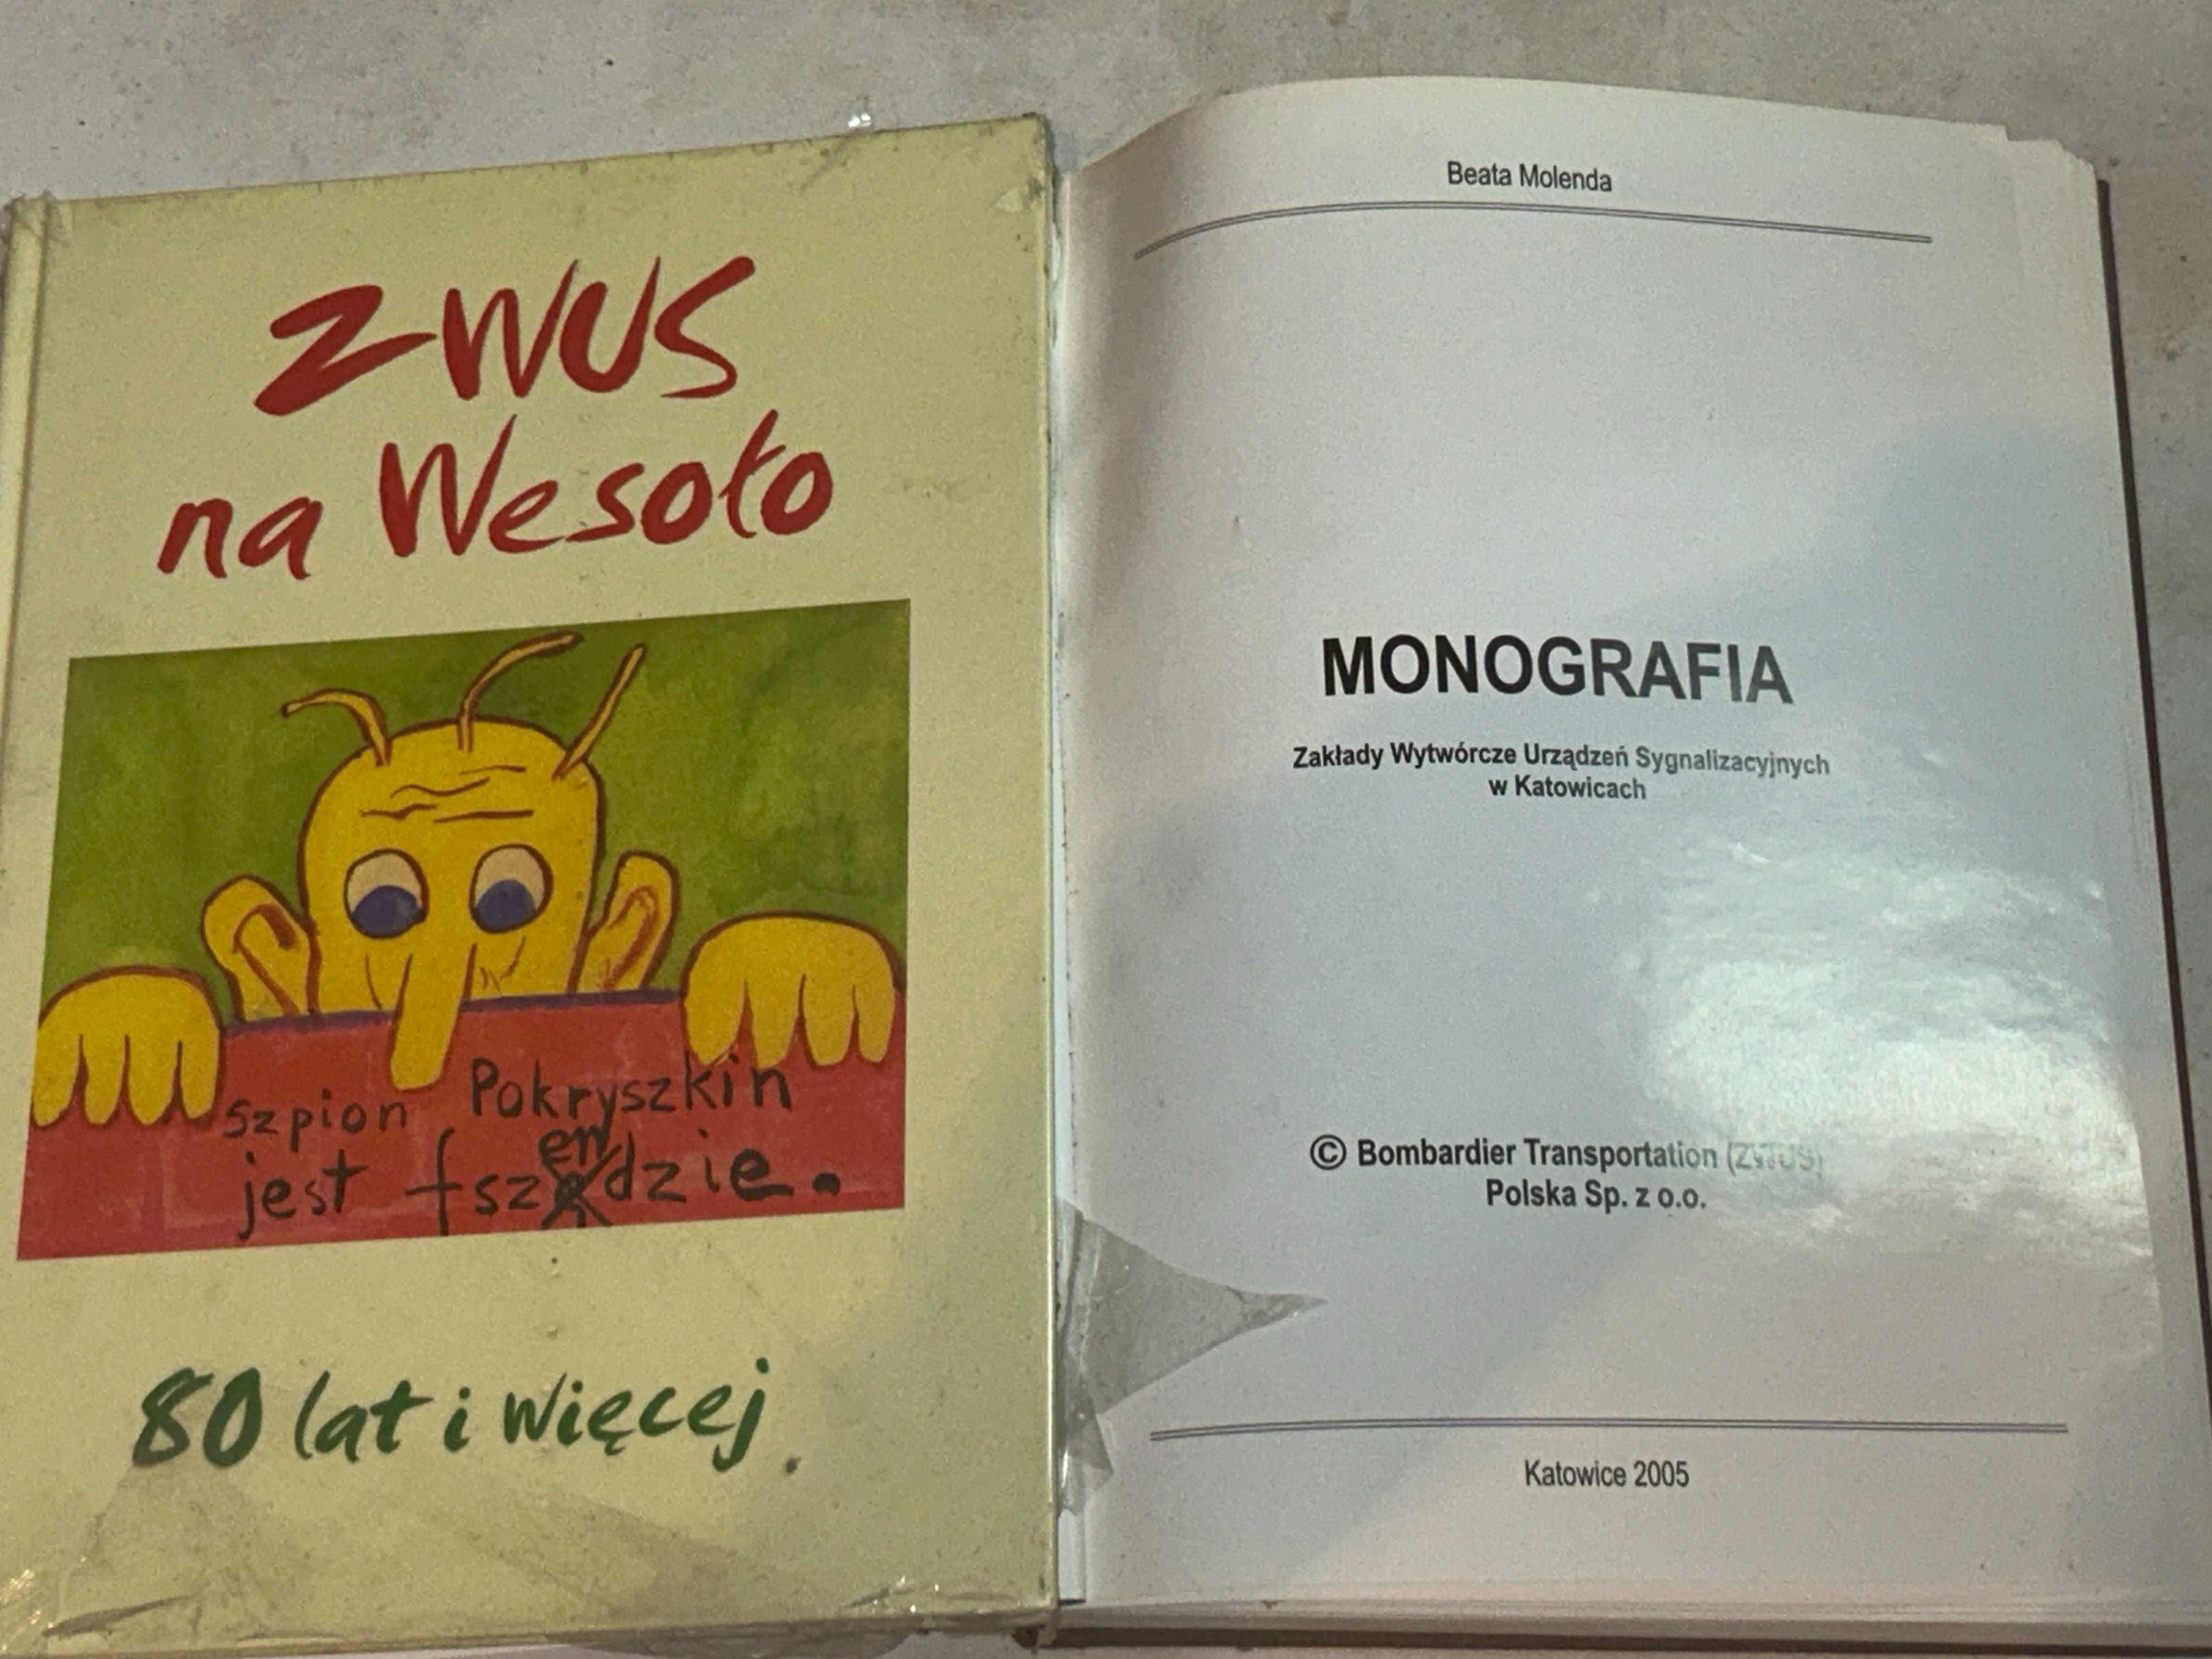 Monografia ZWUS i Na wesoło - 2 sztuki